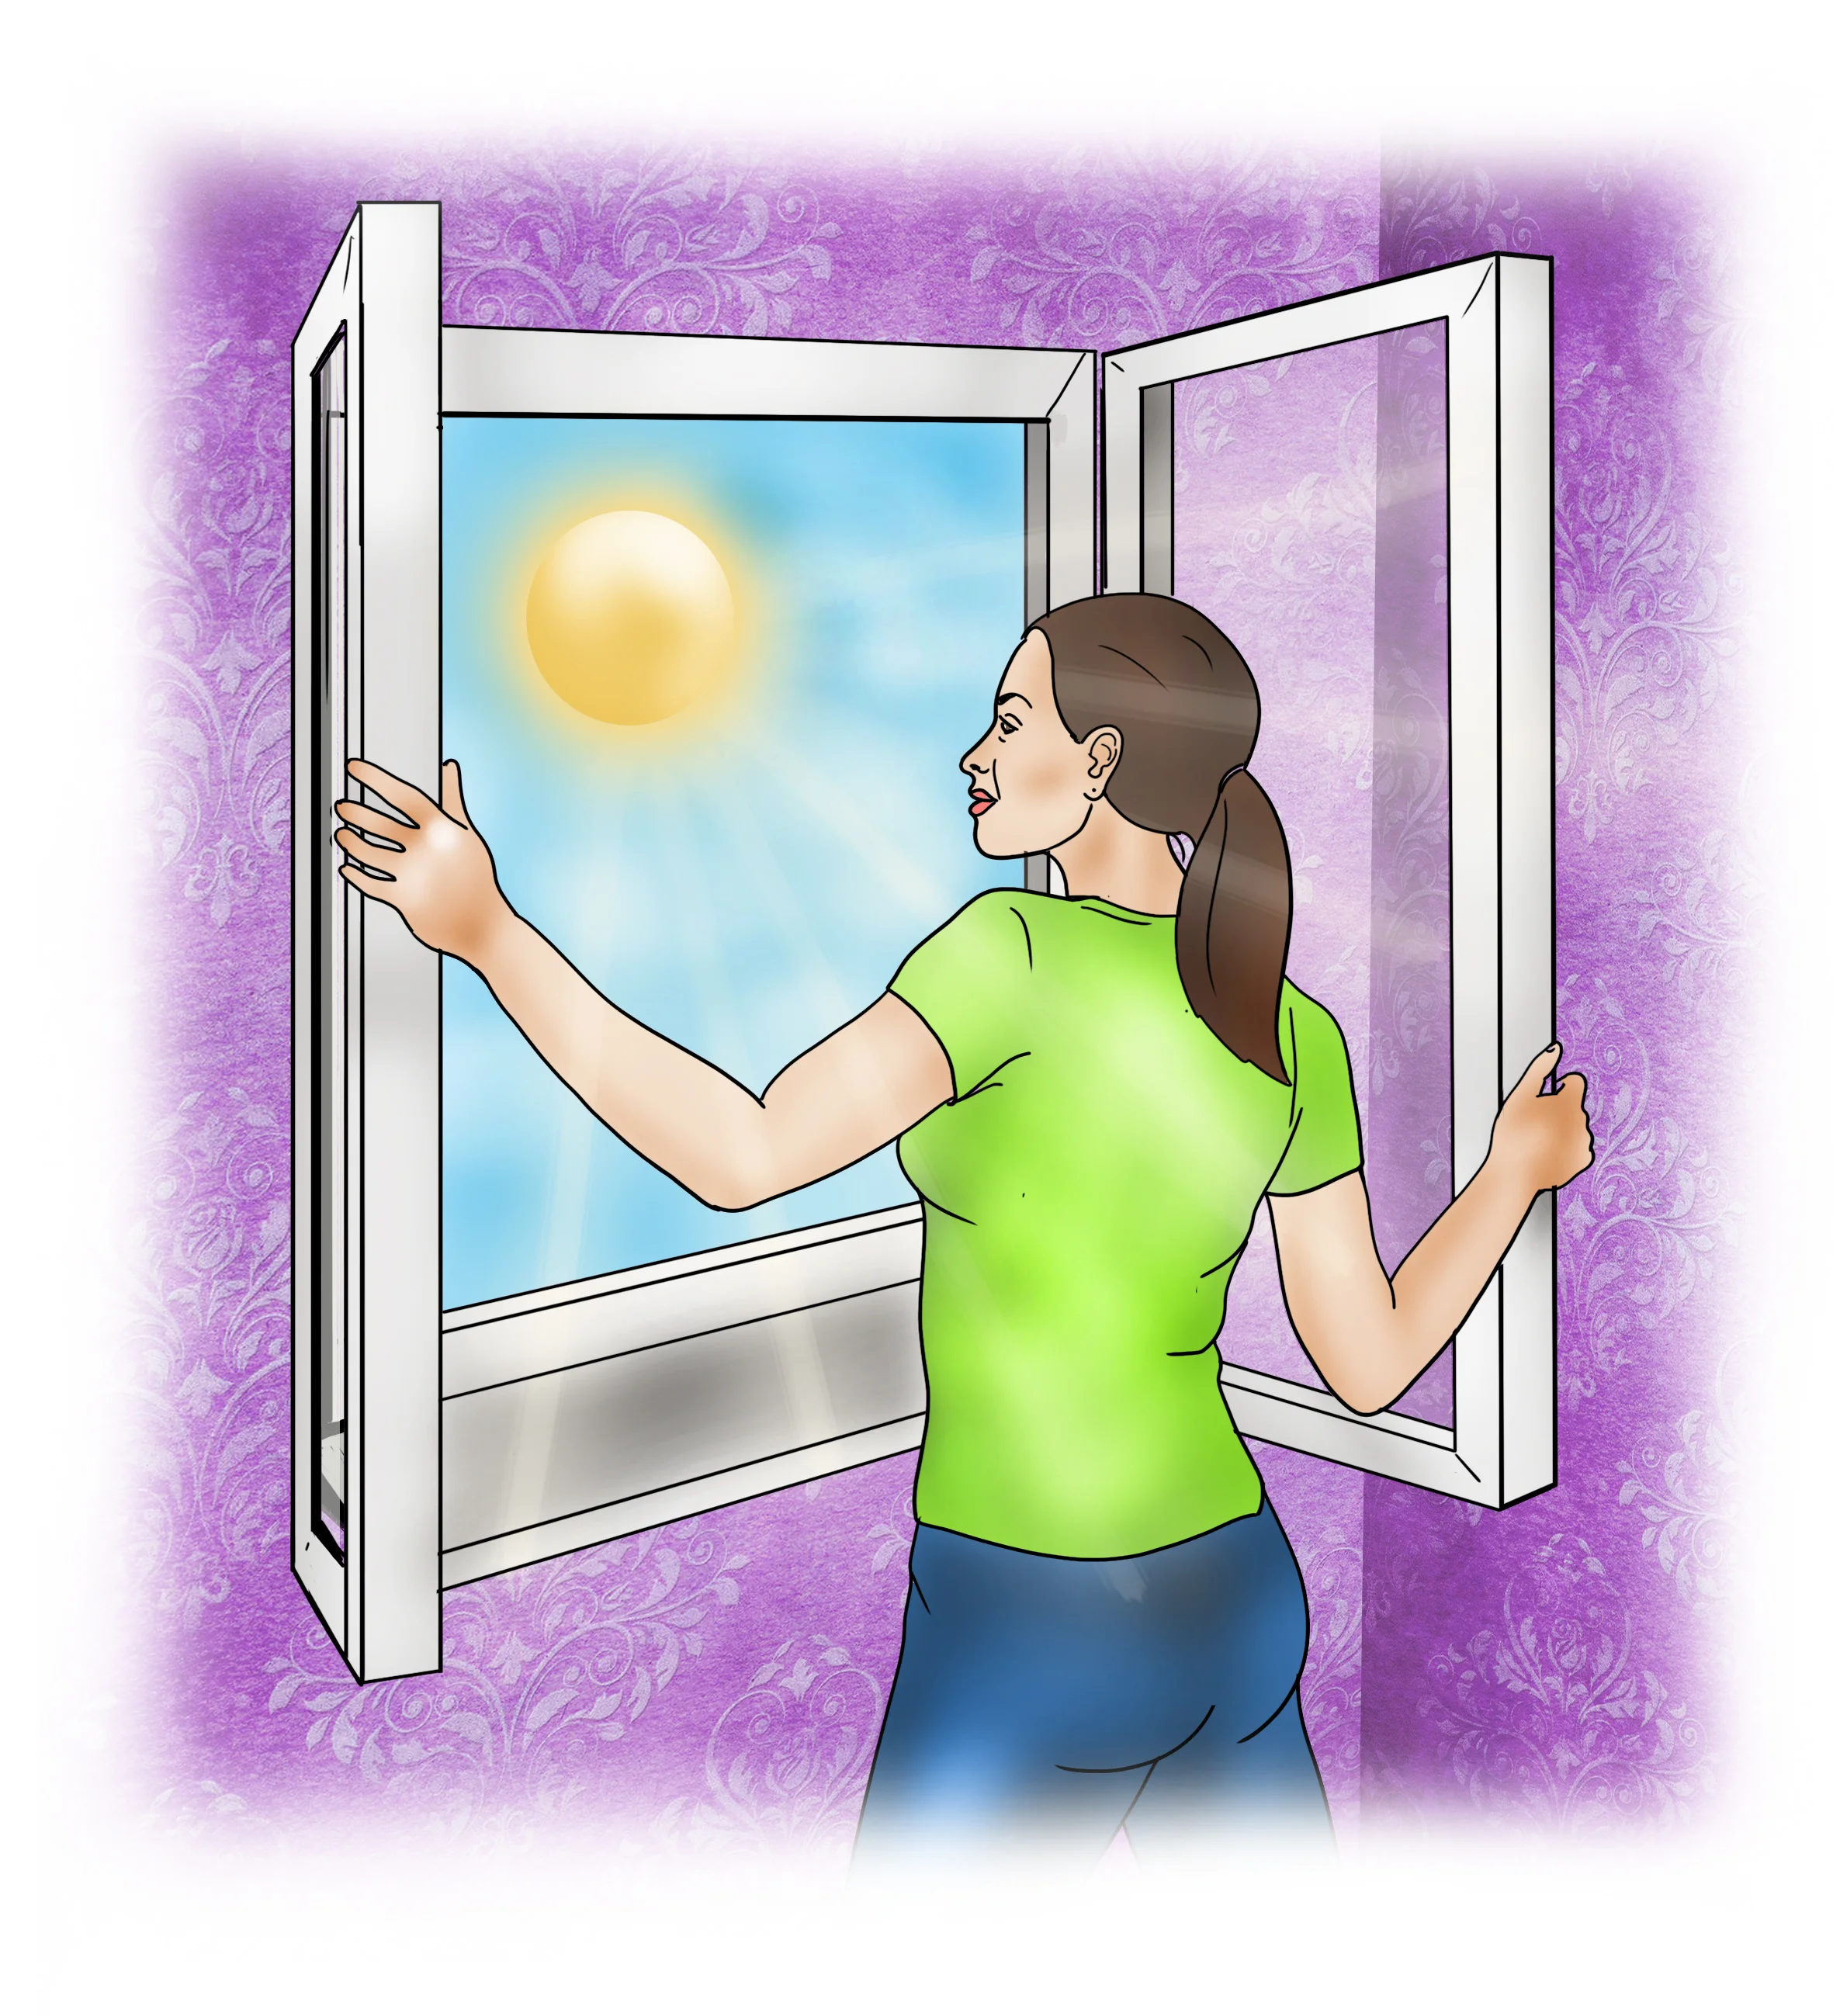 Open windows to increase air circulation